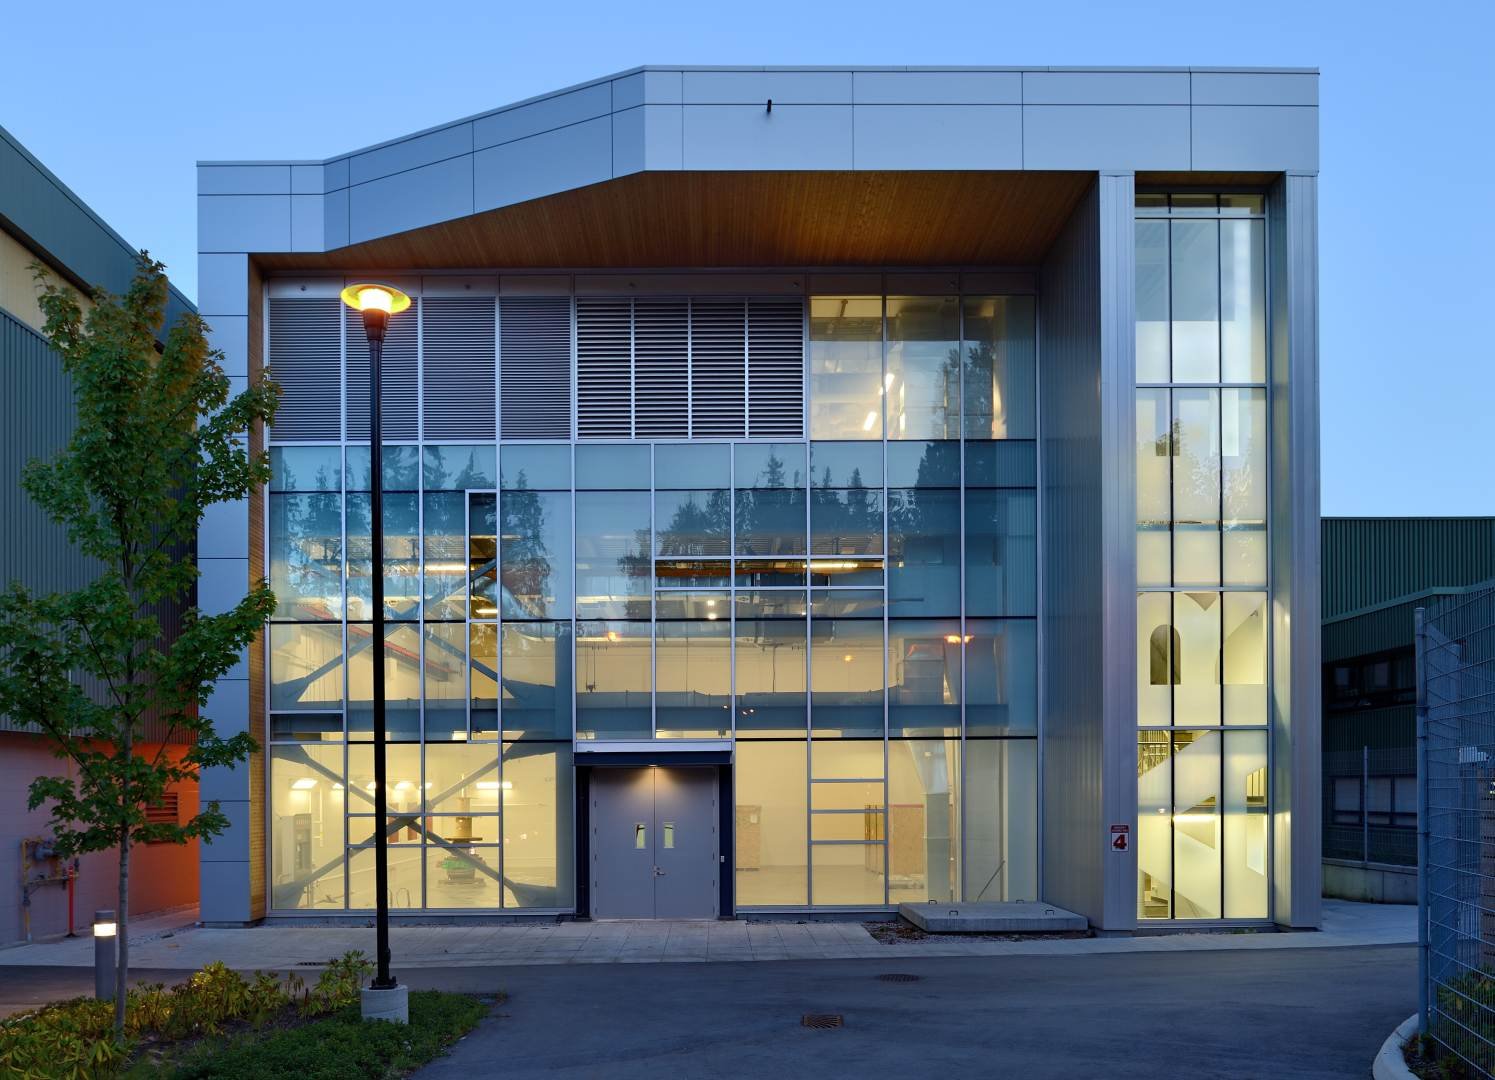 TRIUMF Centre at University of British Columbia